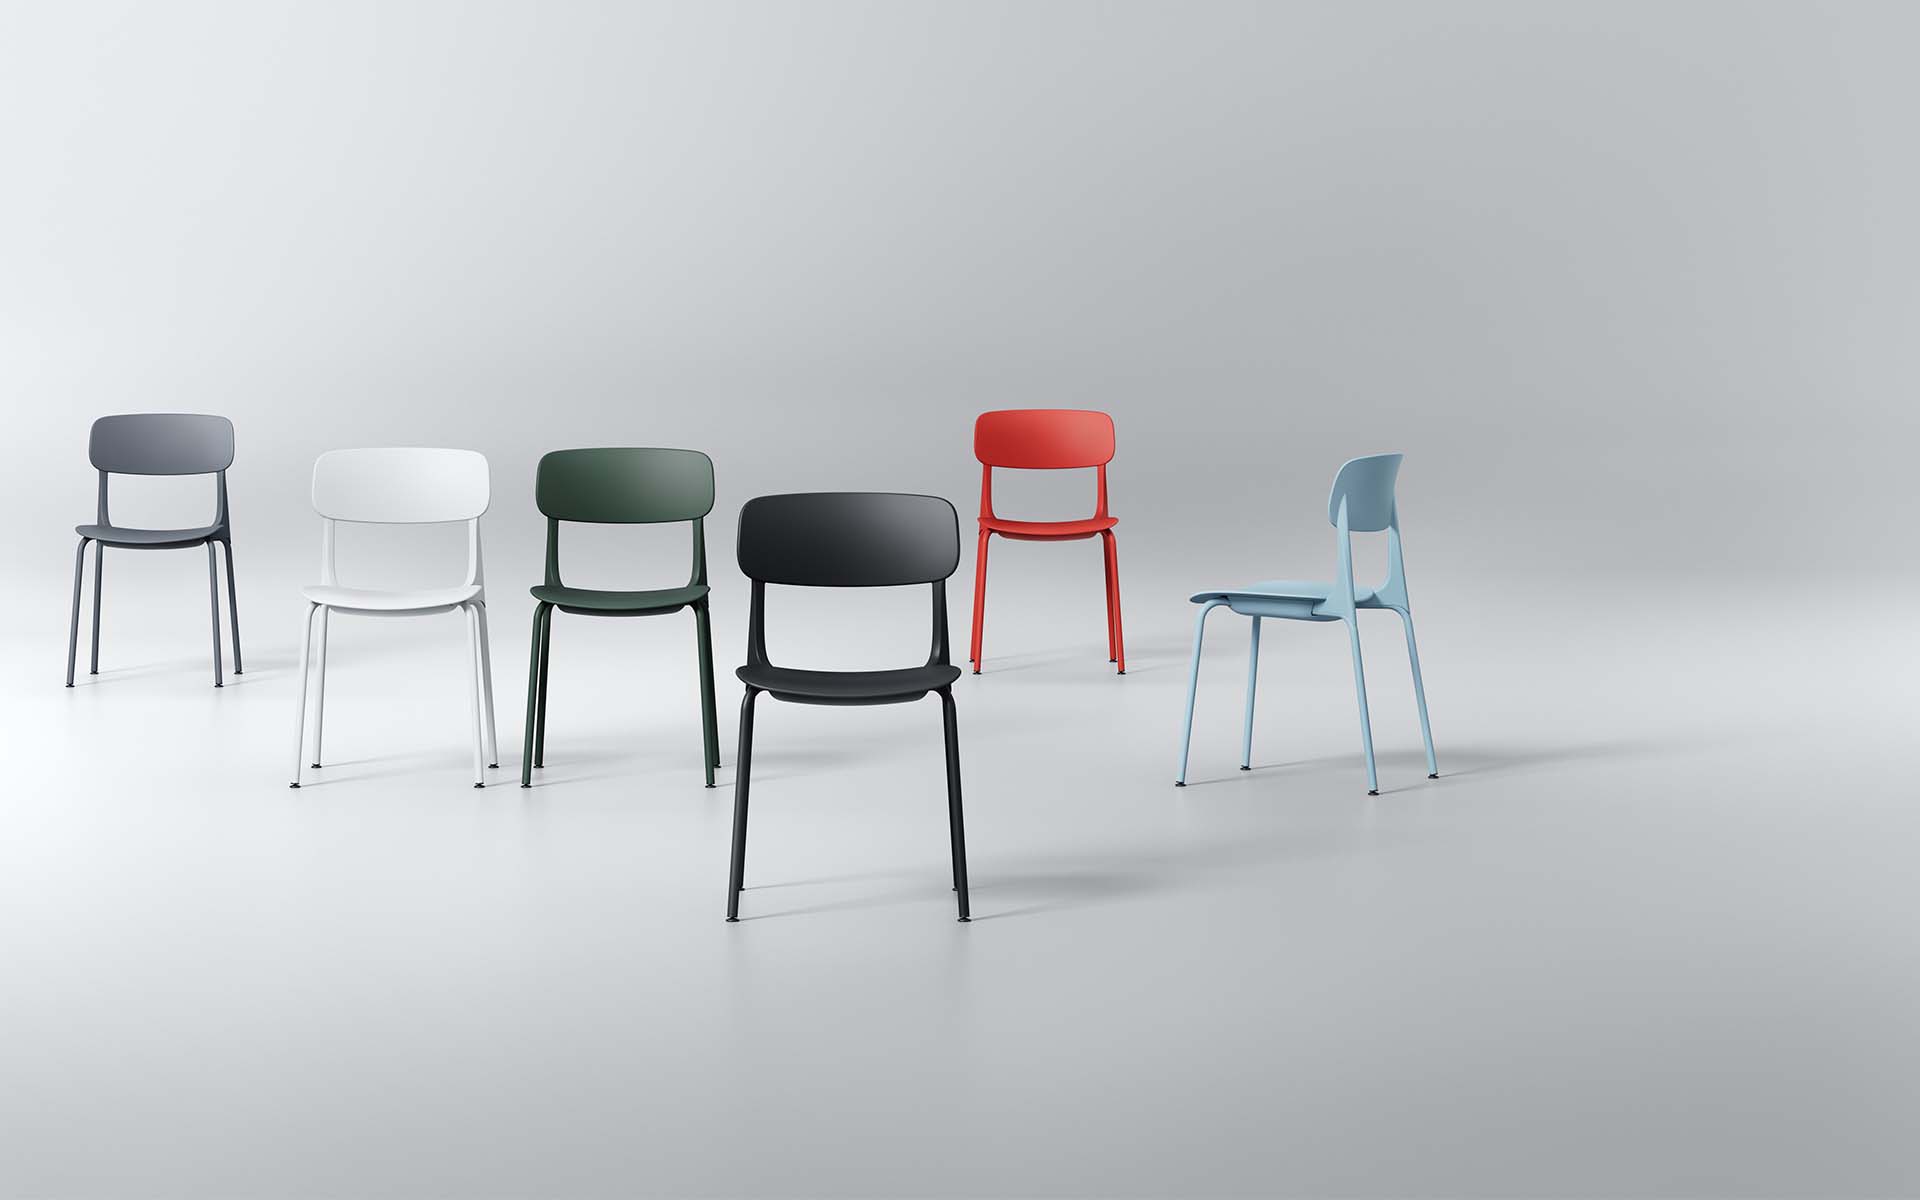 Sechs Okamura Ena Besucherstühle von ITO Design in diversen Farben (Dunkelgrau, Neo-Weiss, Dunkelgrün, Schwarz, Orangerot und Salbei)